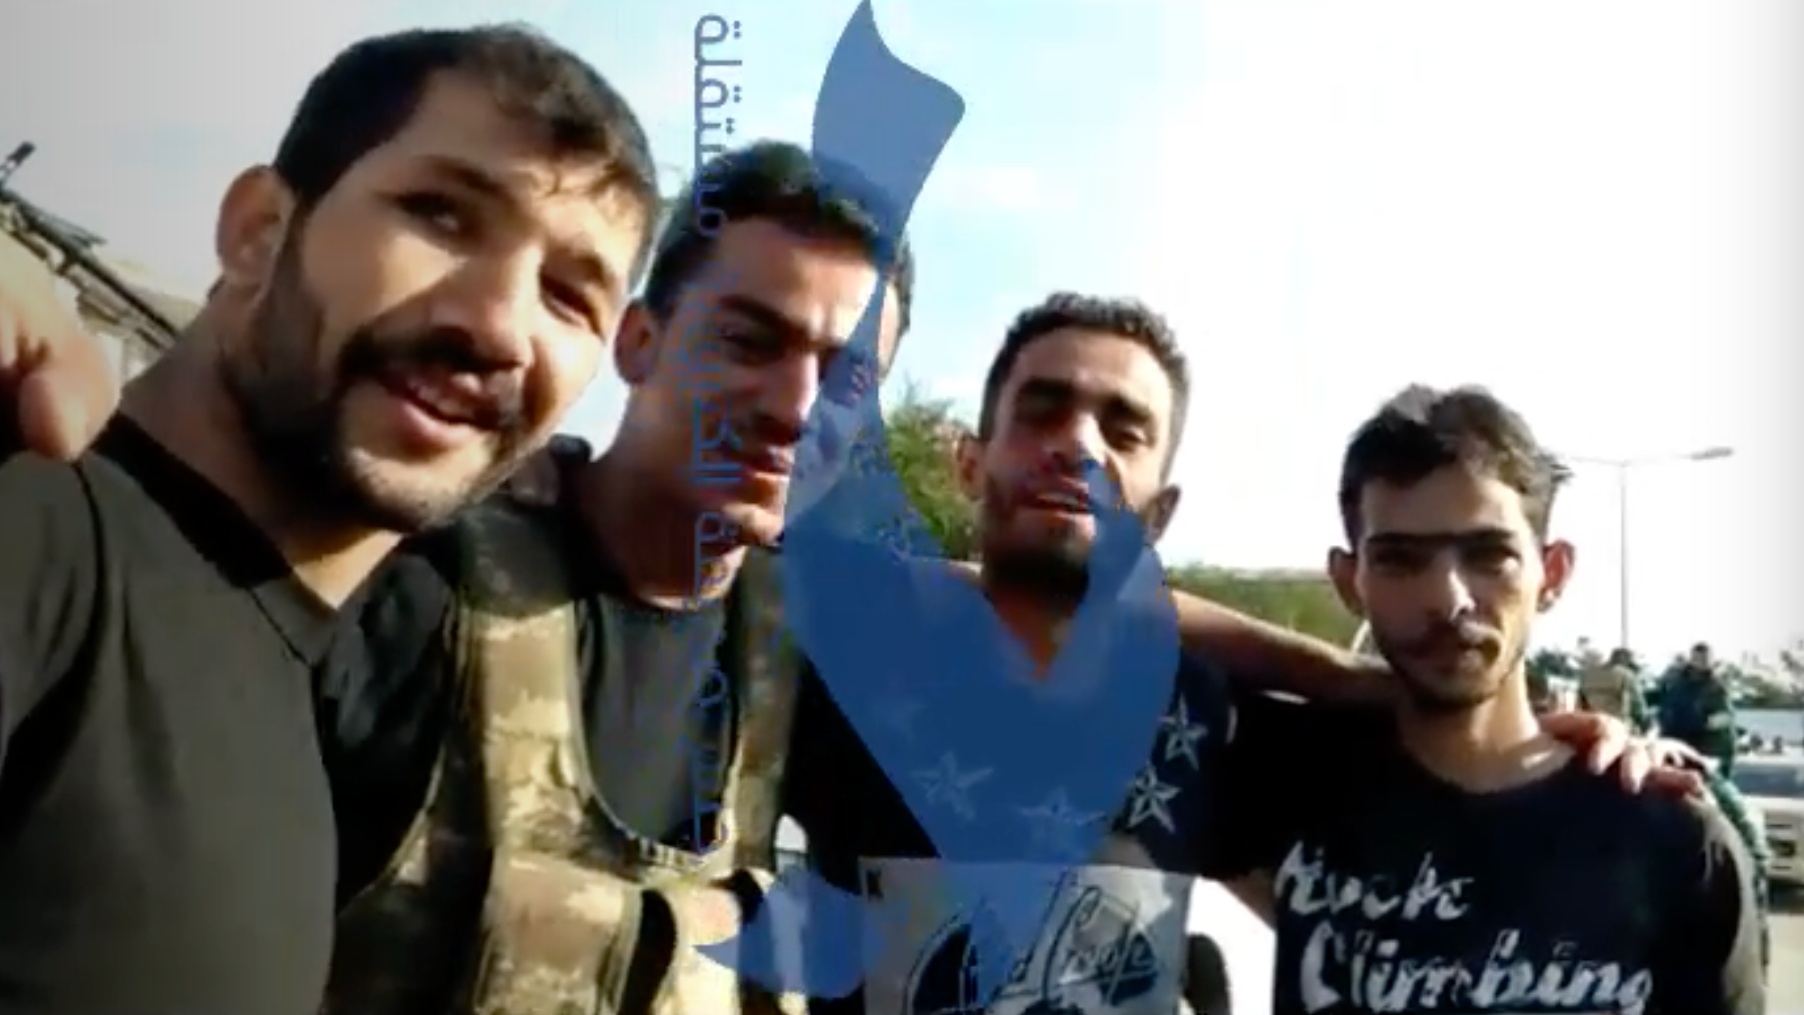 Four Syrian mercenaries geo-located to Horadiz, south-western Azerbaijan